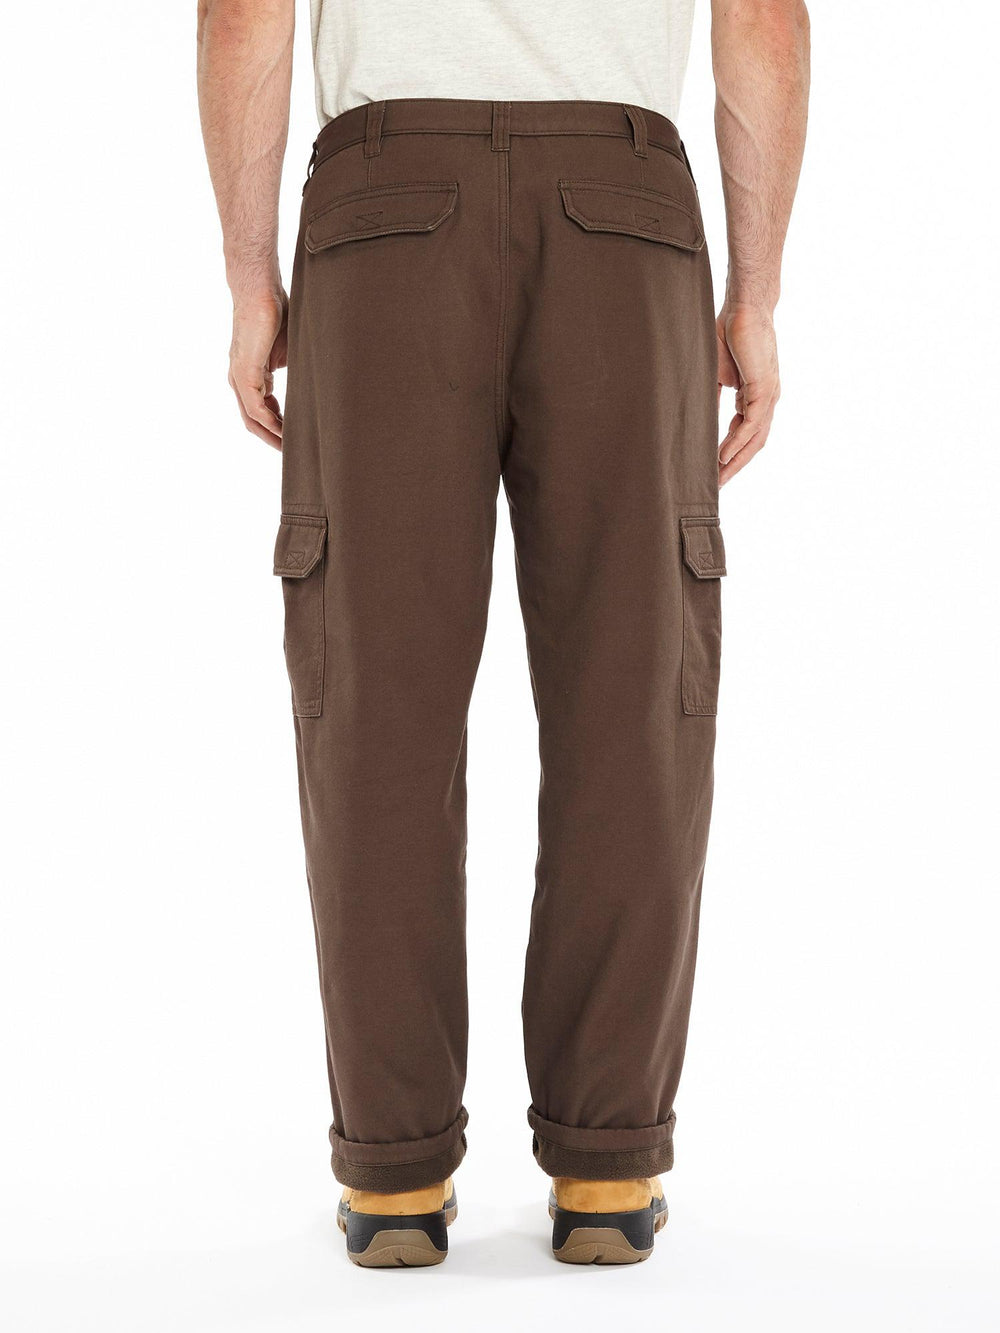 Key Men's Fleece Lined Shield Flex Pant Size 36X32 Bark –  shop.generalstorespokane